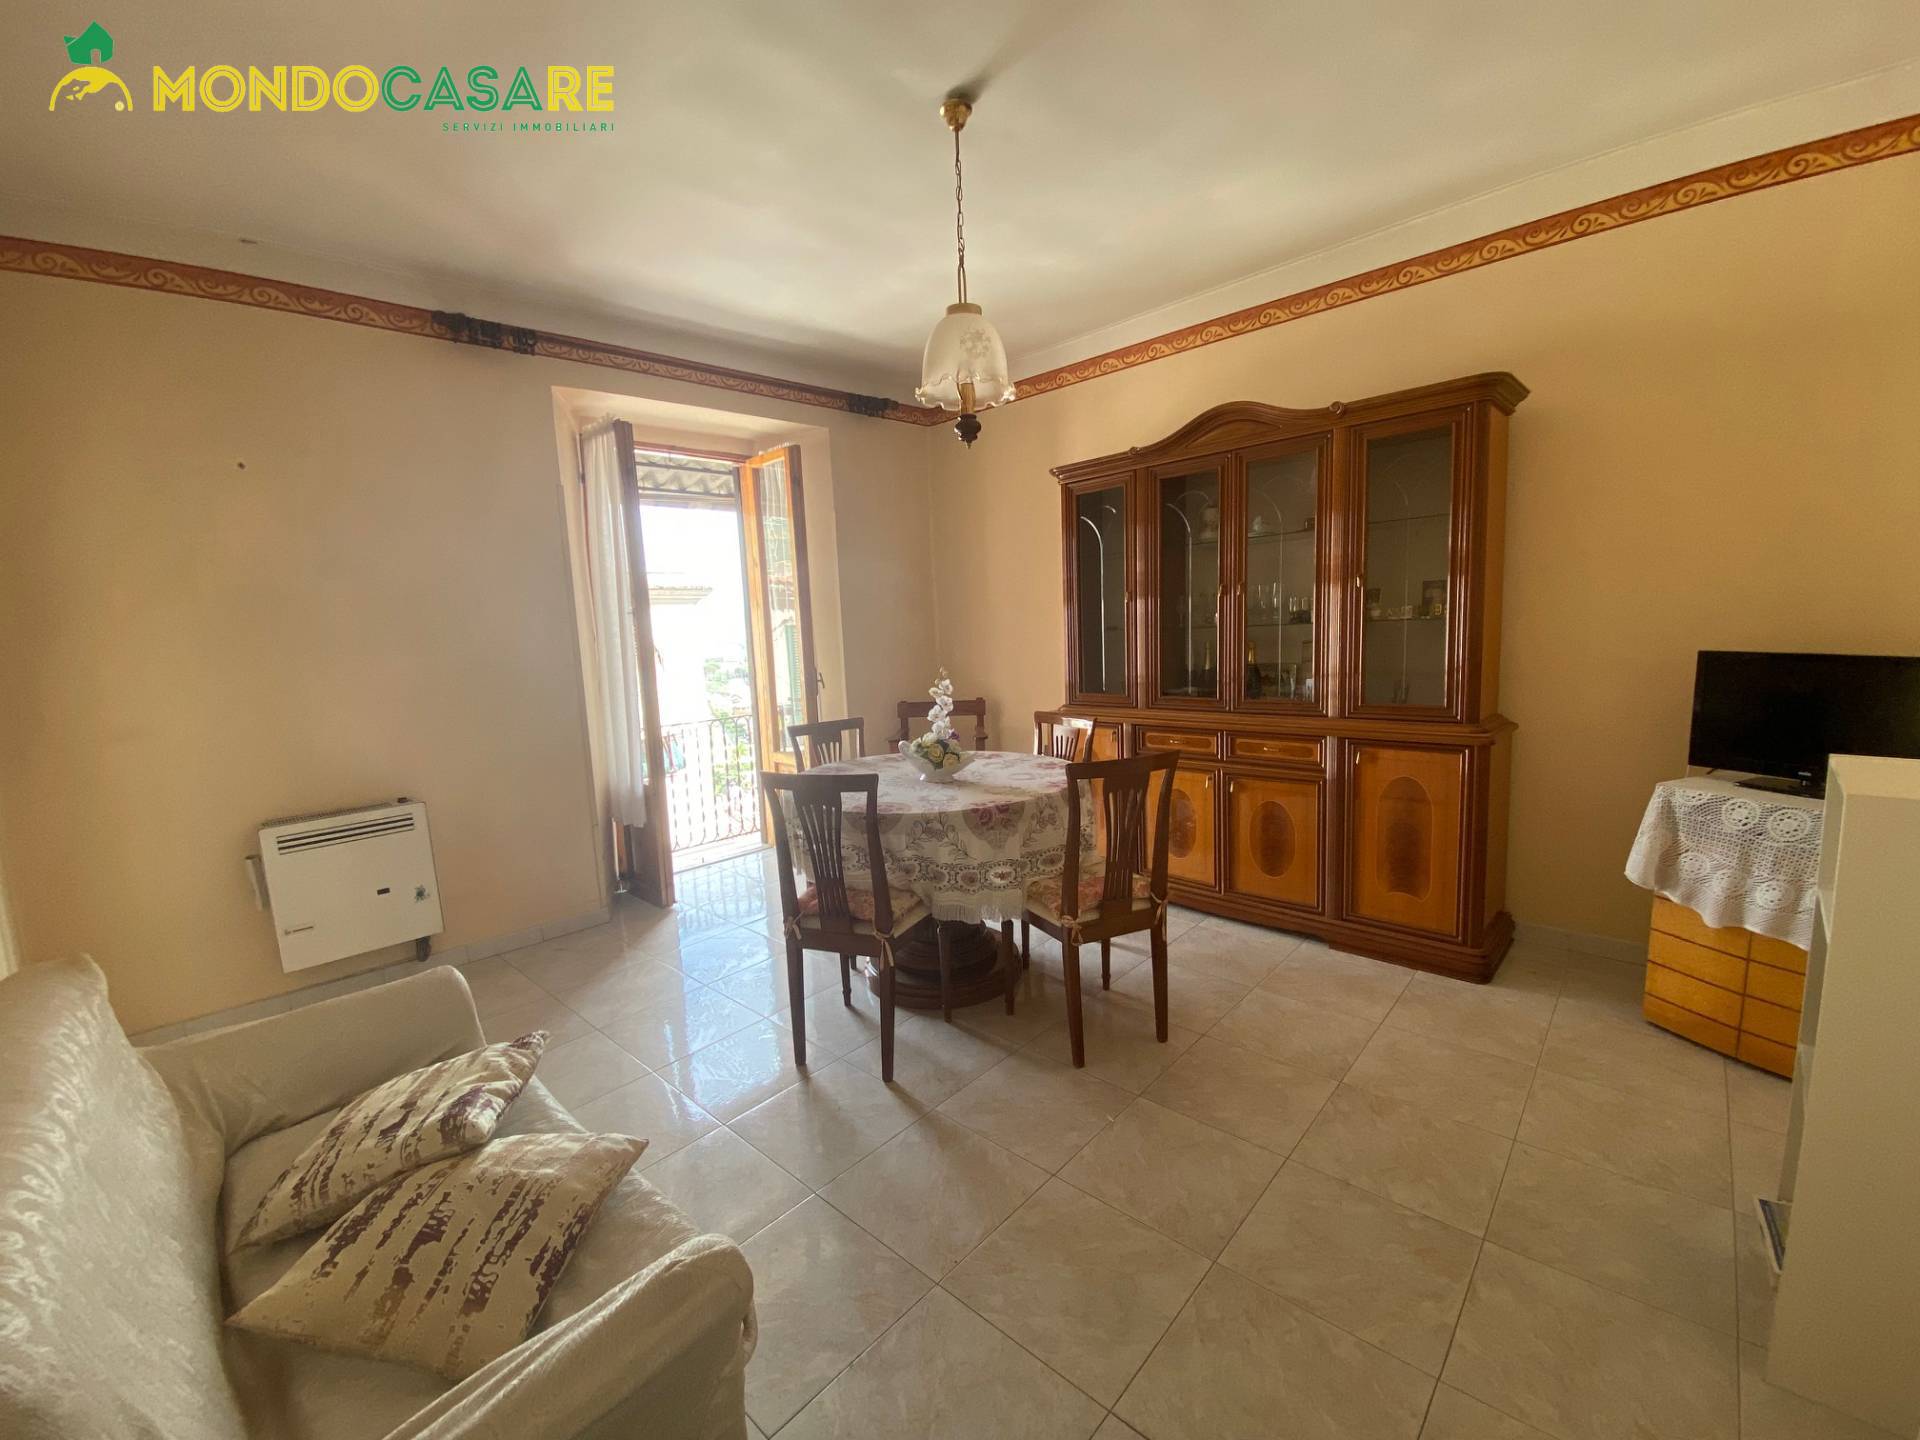 Appartamento in vendita a Palombara Sabina, 3 locali, prezzo € 94.000 | CambioCasa.it